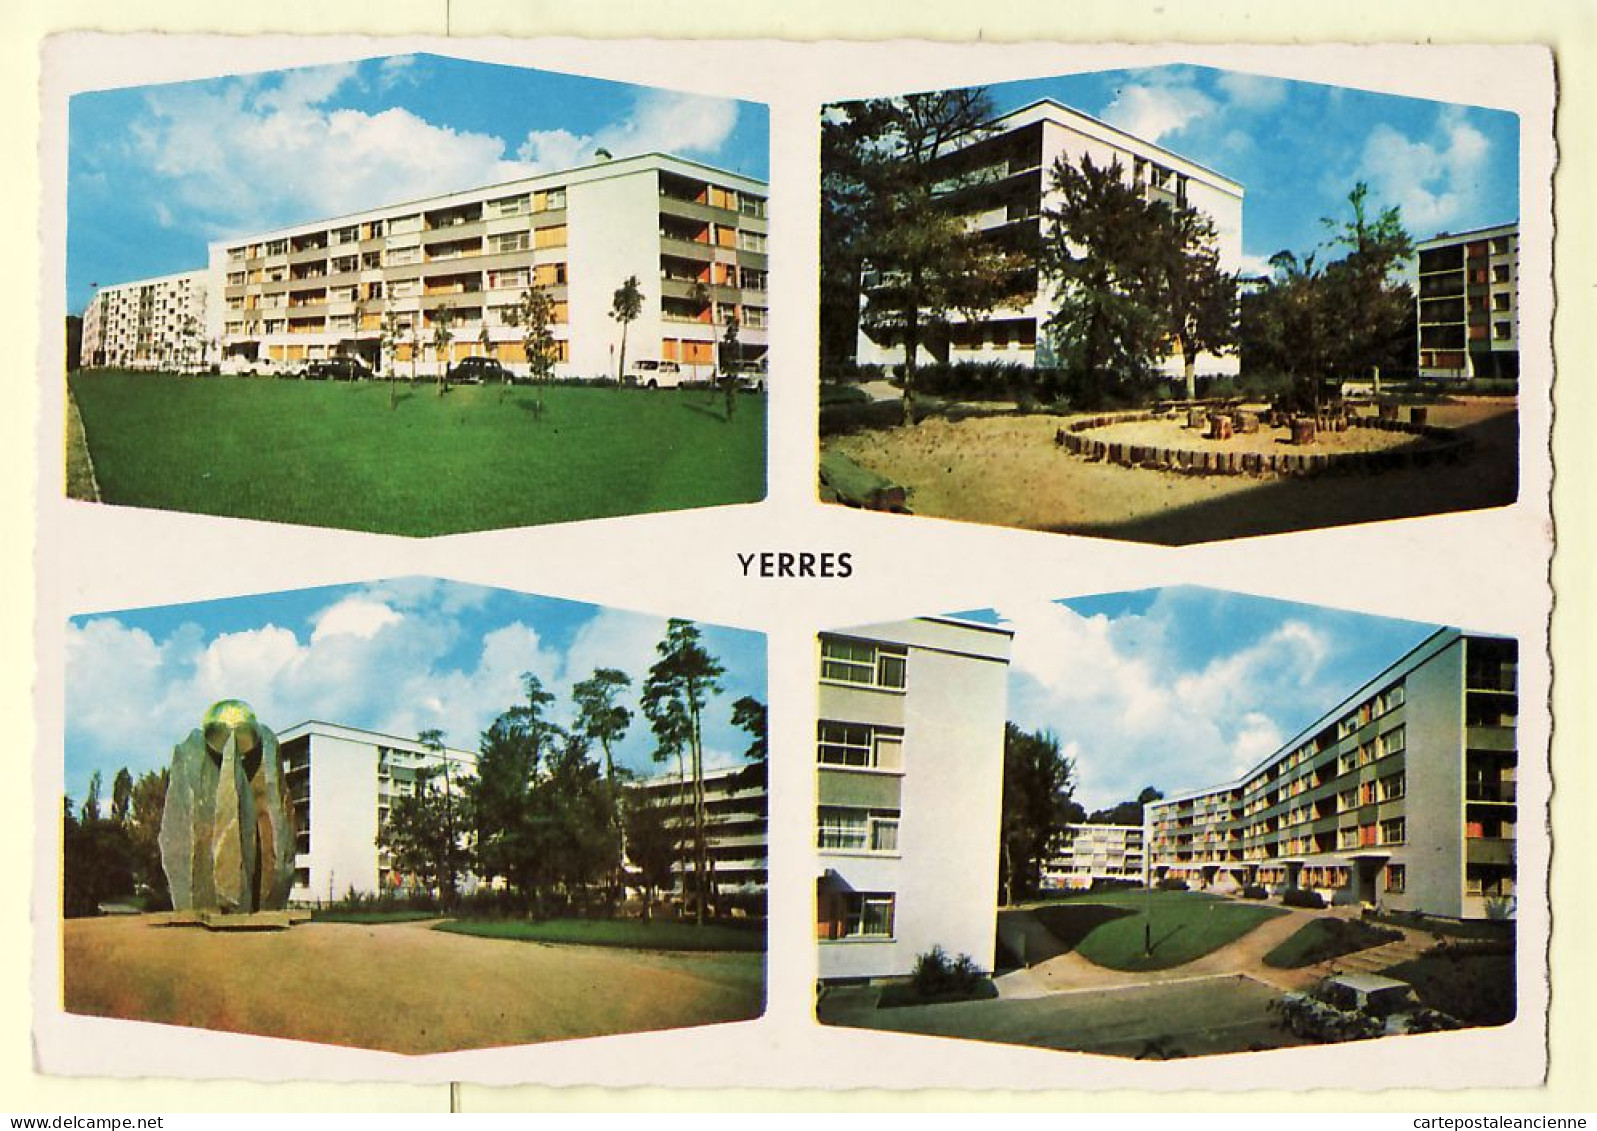 35436 / YERRES Essonne Cité Les TOURNELLES Multivues Immeuble Parc Square 1965s - Photogravure RAYMON - Yerres